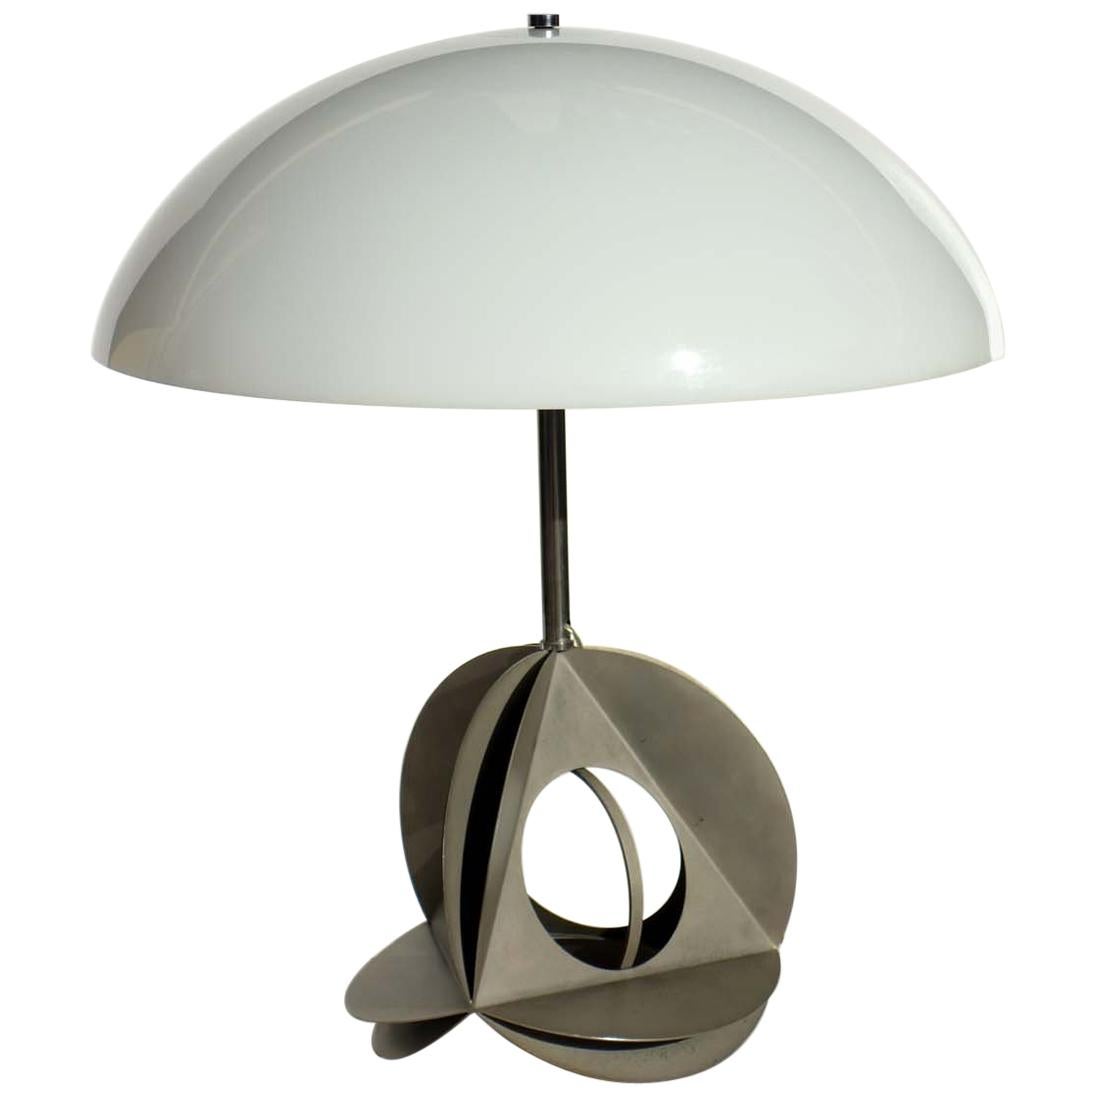 1960s by Bruno Munari Italian Design Sculpture Table Lamp